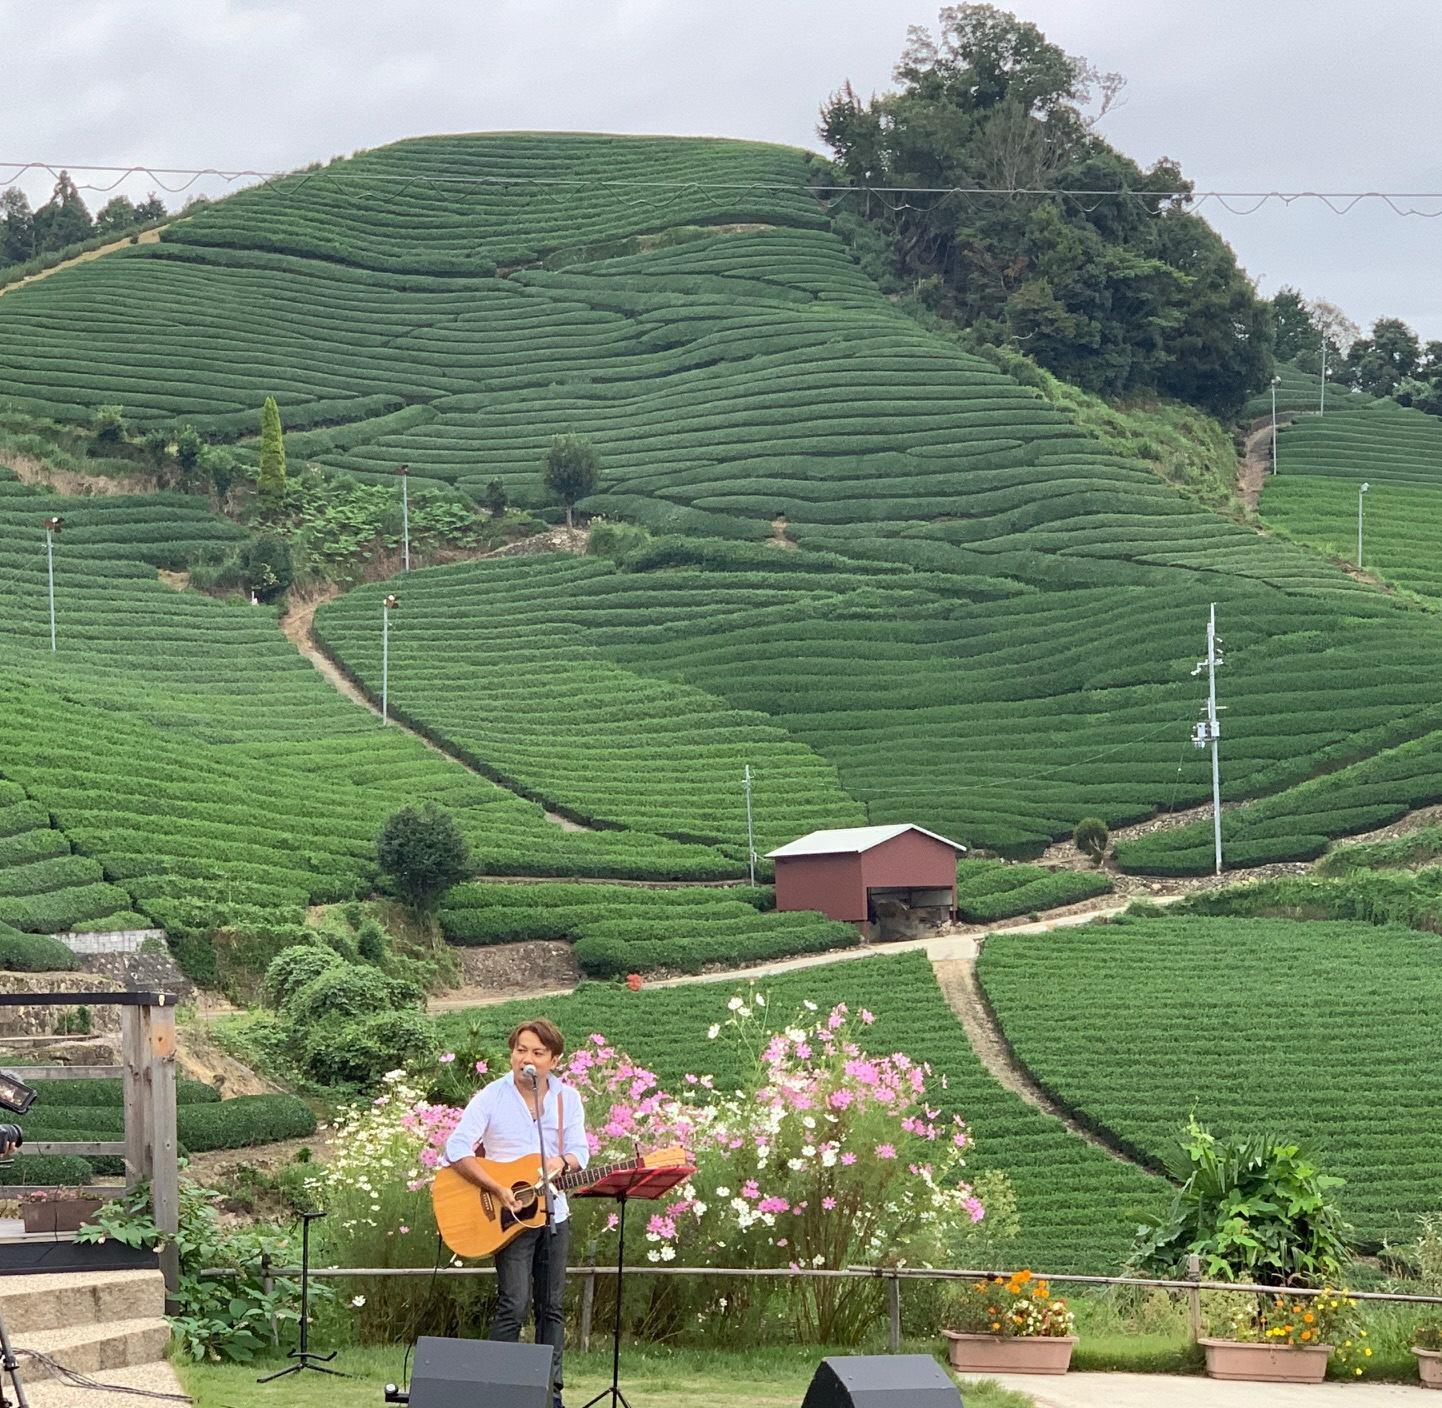 コスモスの花の前で男性がギター演奏しているその奥に緑一面の茶畑が広がっている写真